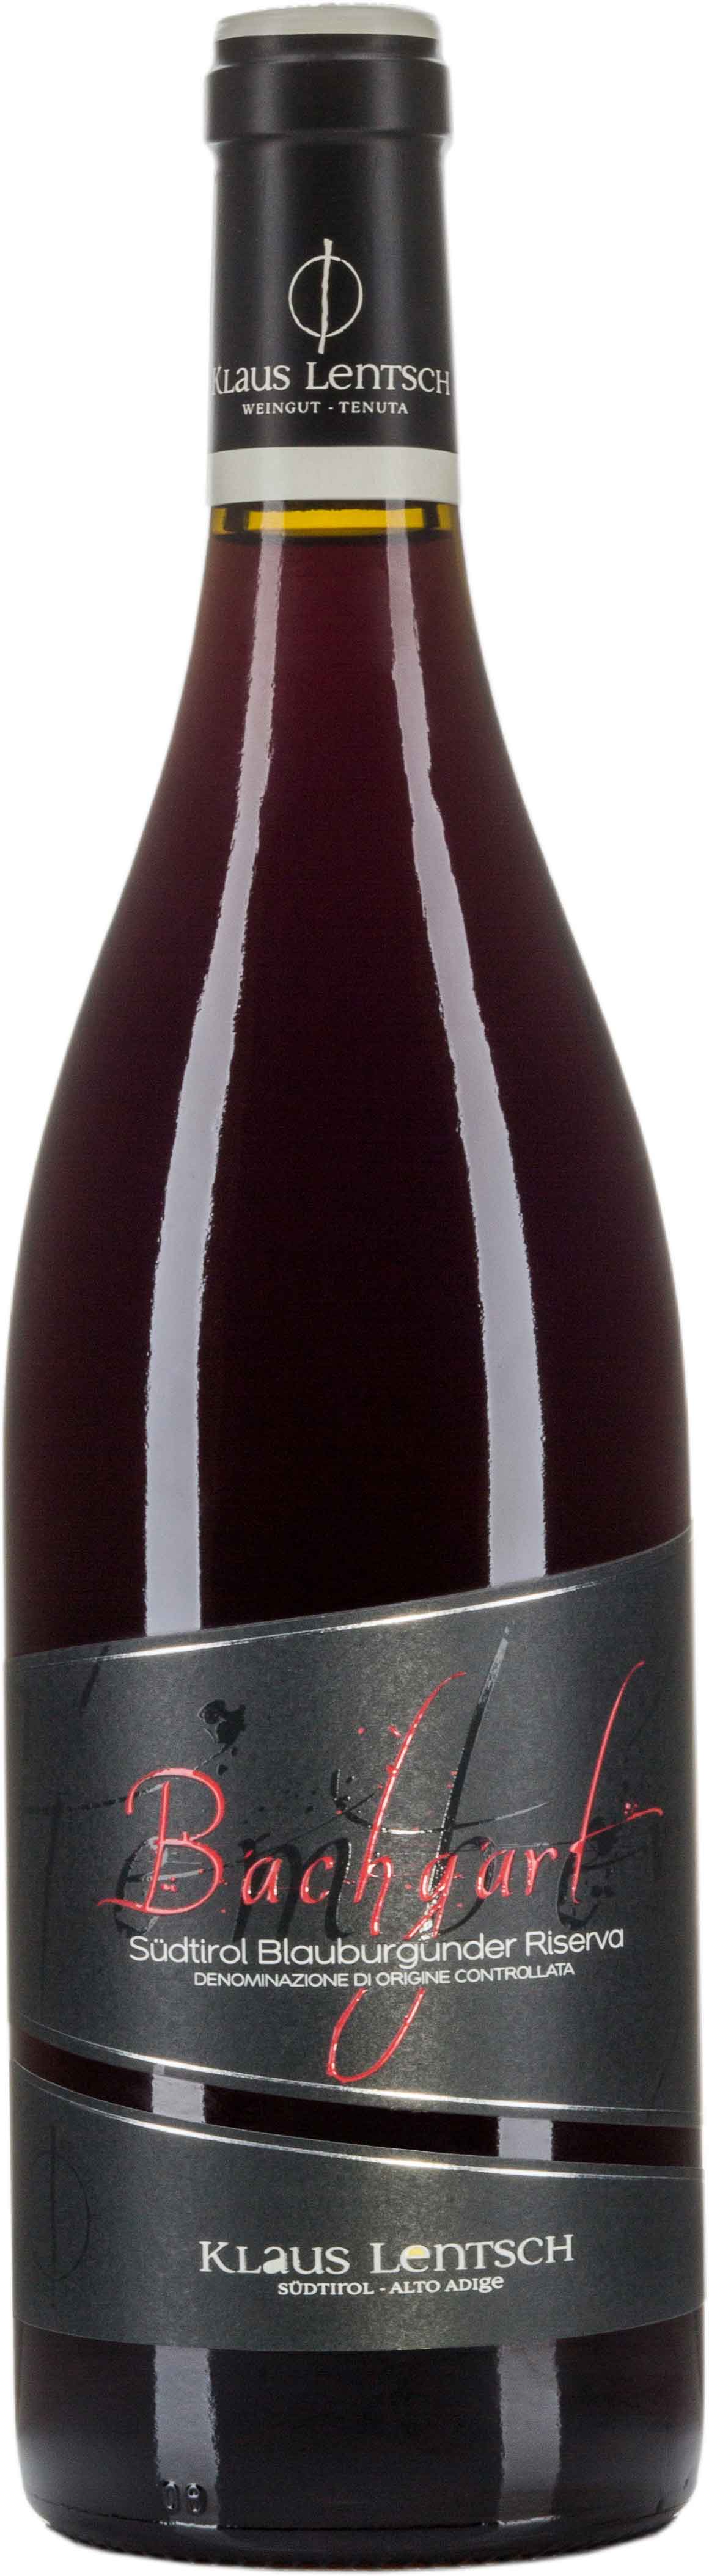 Hemberg Pinot Nero Riserva